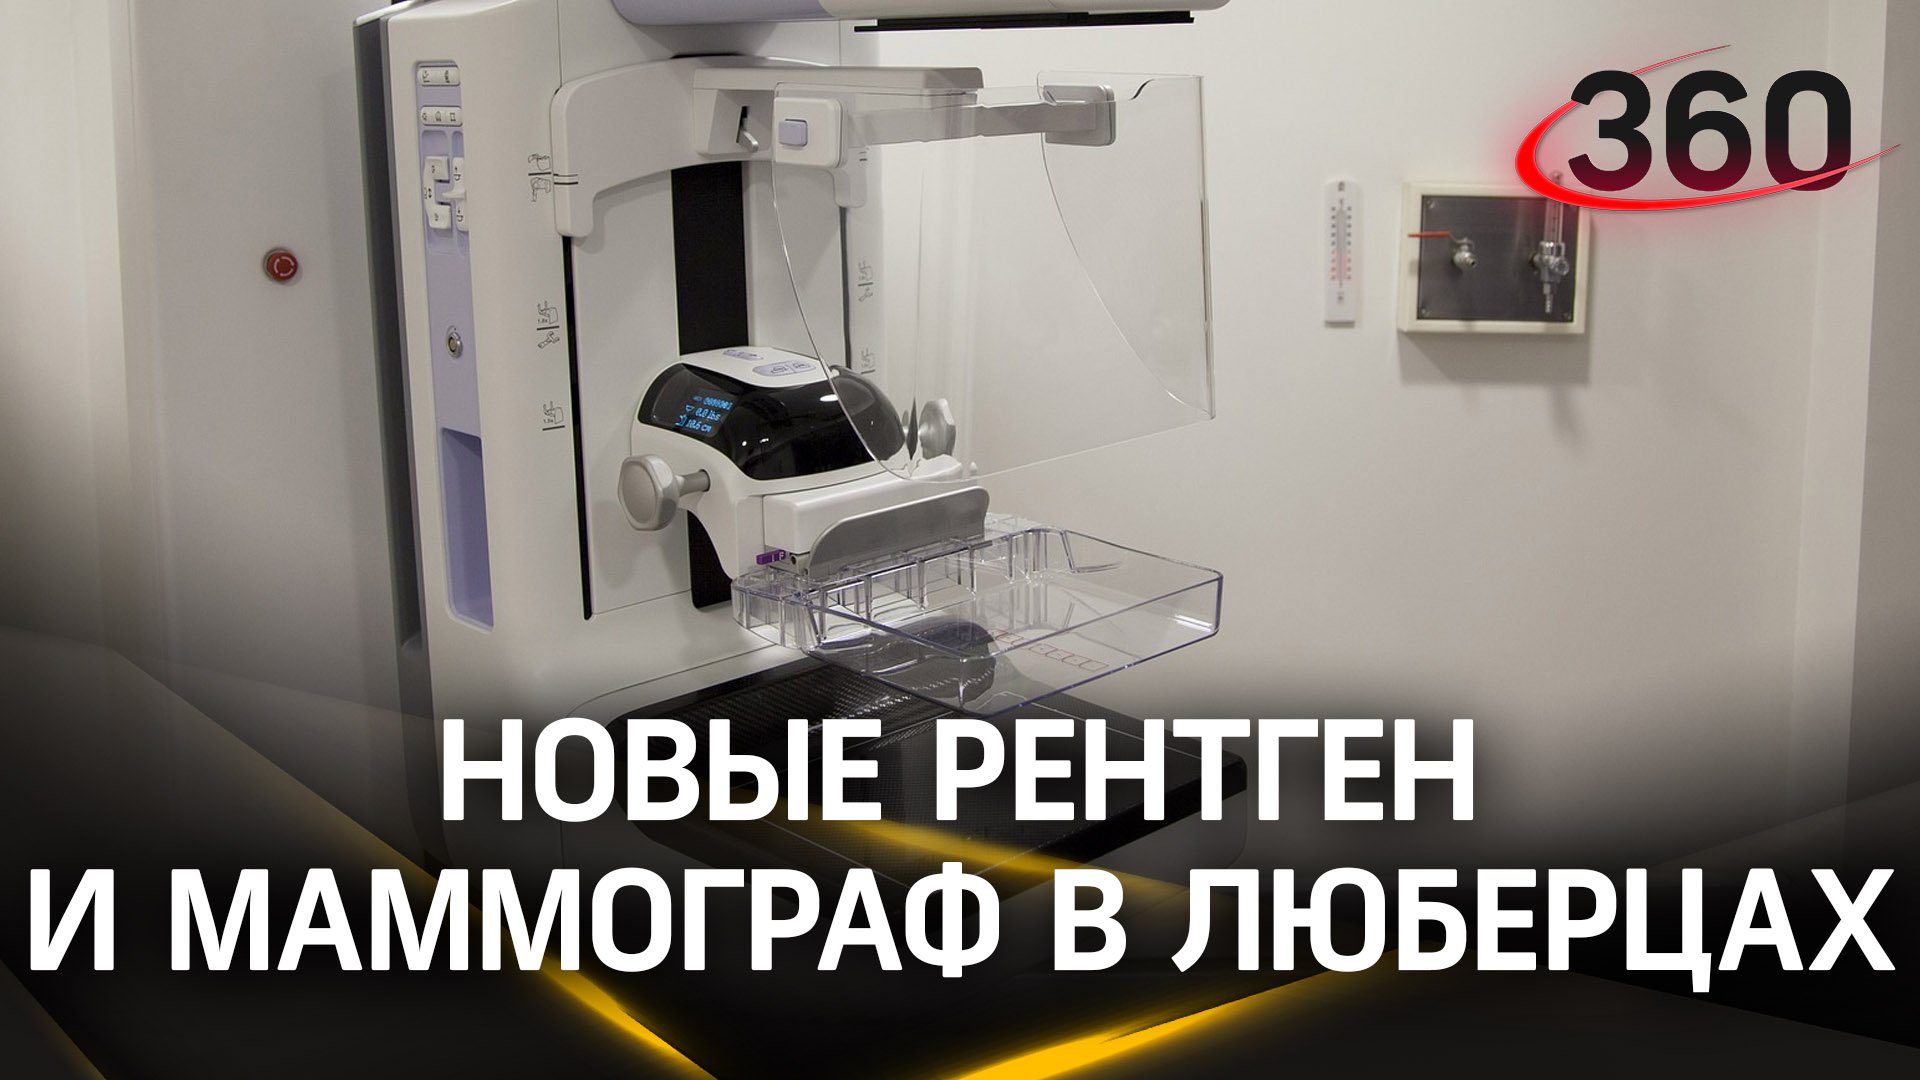 Новые рентген и маммограф появились в поликлинике в Люберцах